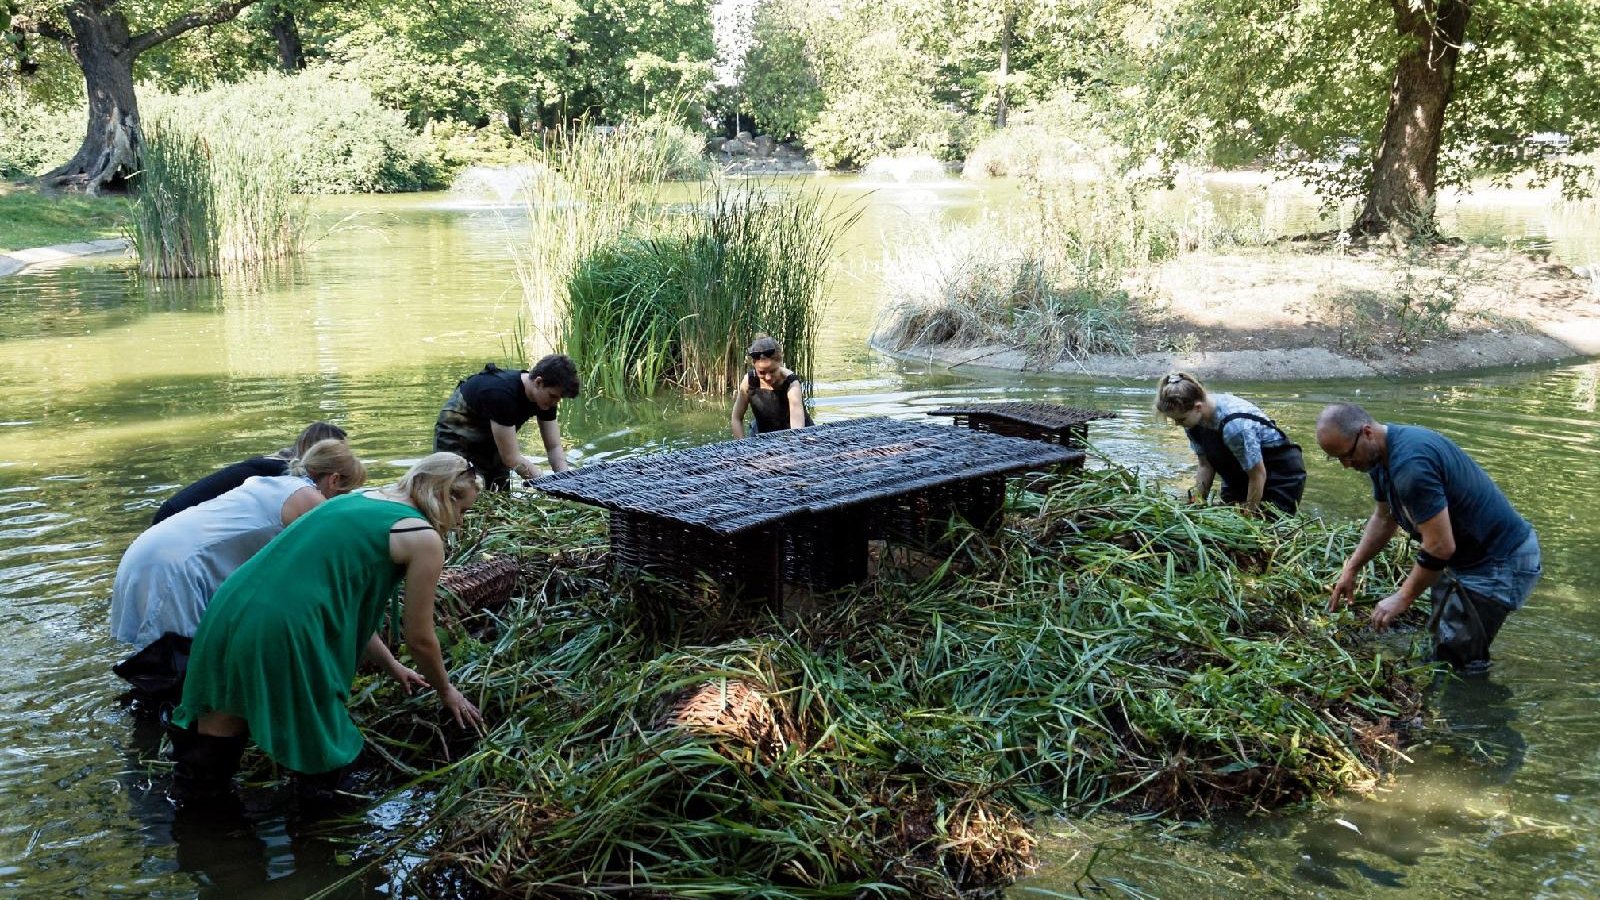 Zdjęcie przedstawia ludzi montujących pływający ogród w wodzie.